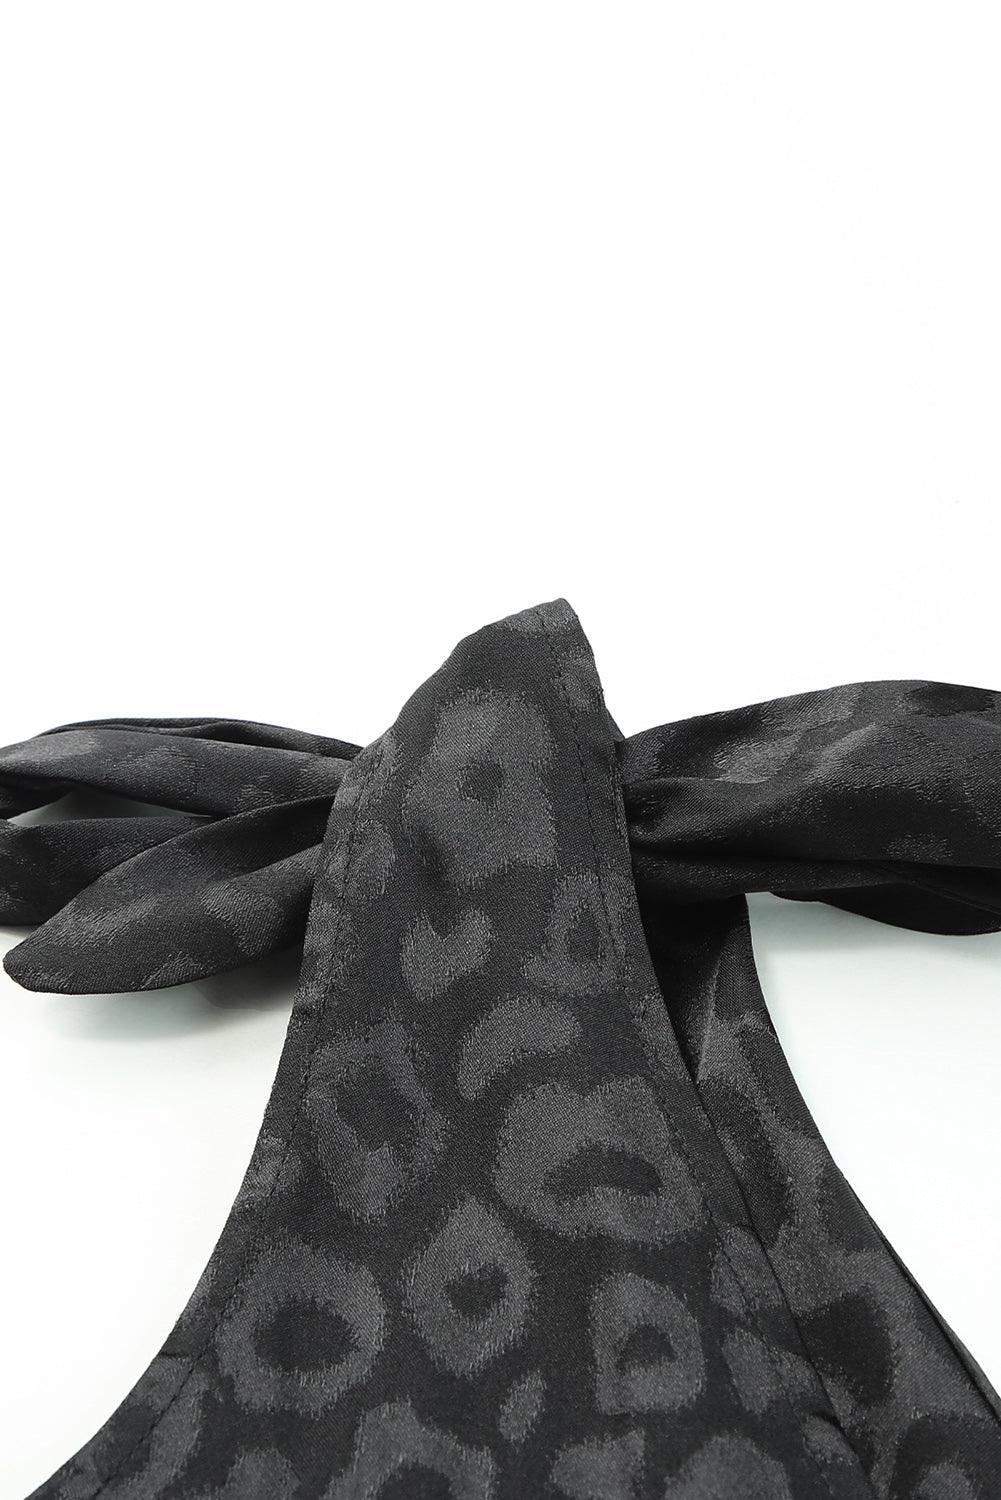 Satin Leopard Print Tie Shoulder V Neck Bodysuit